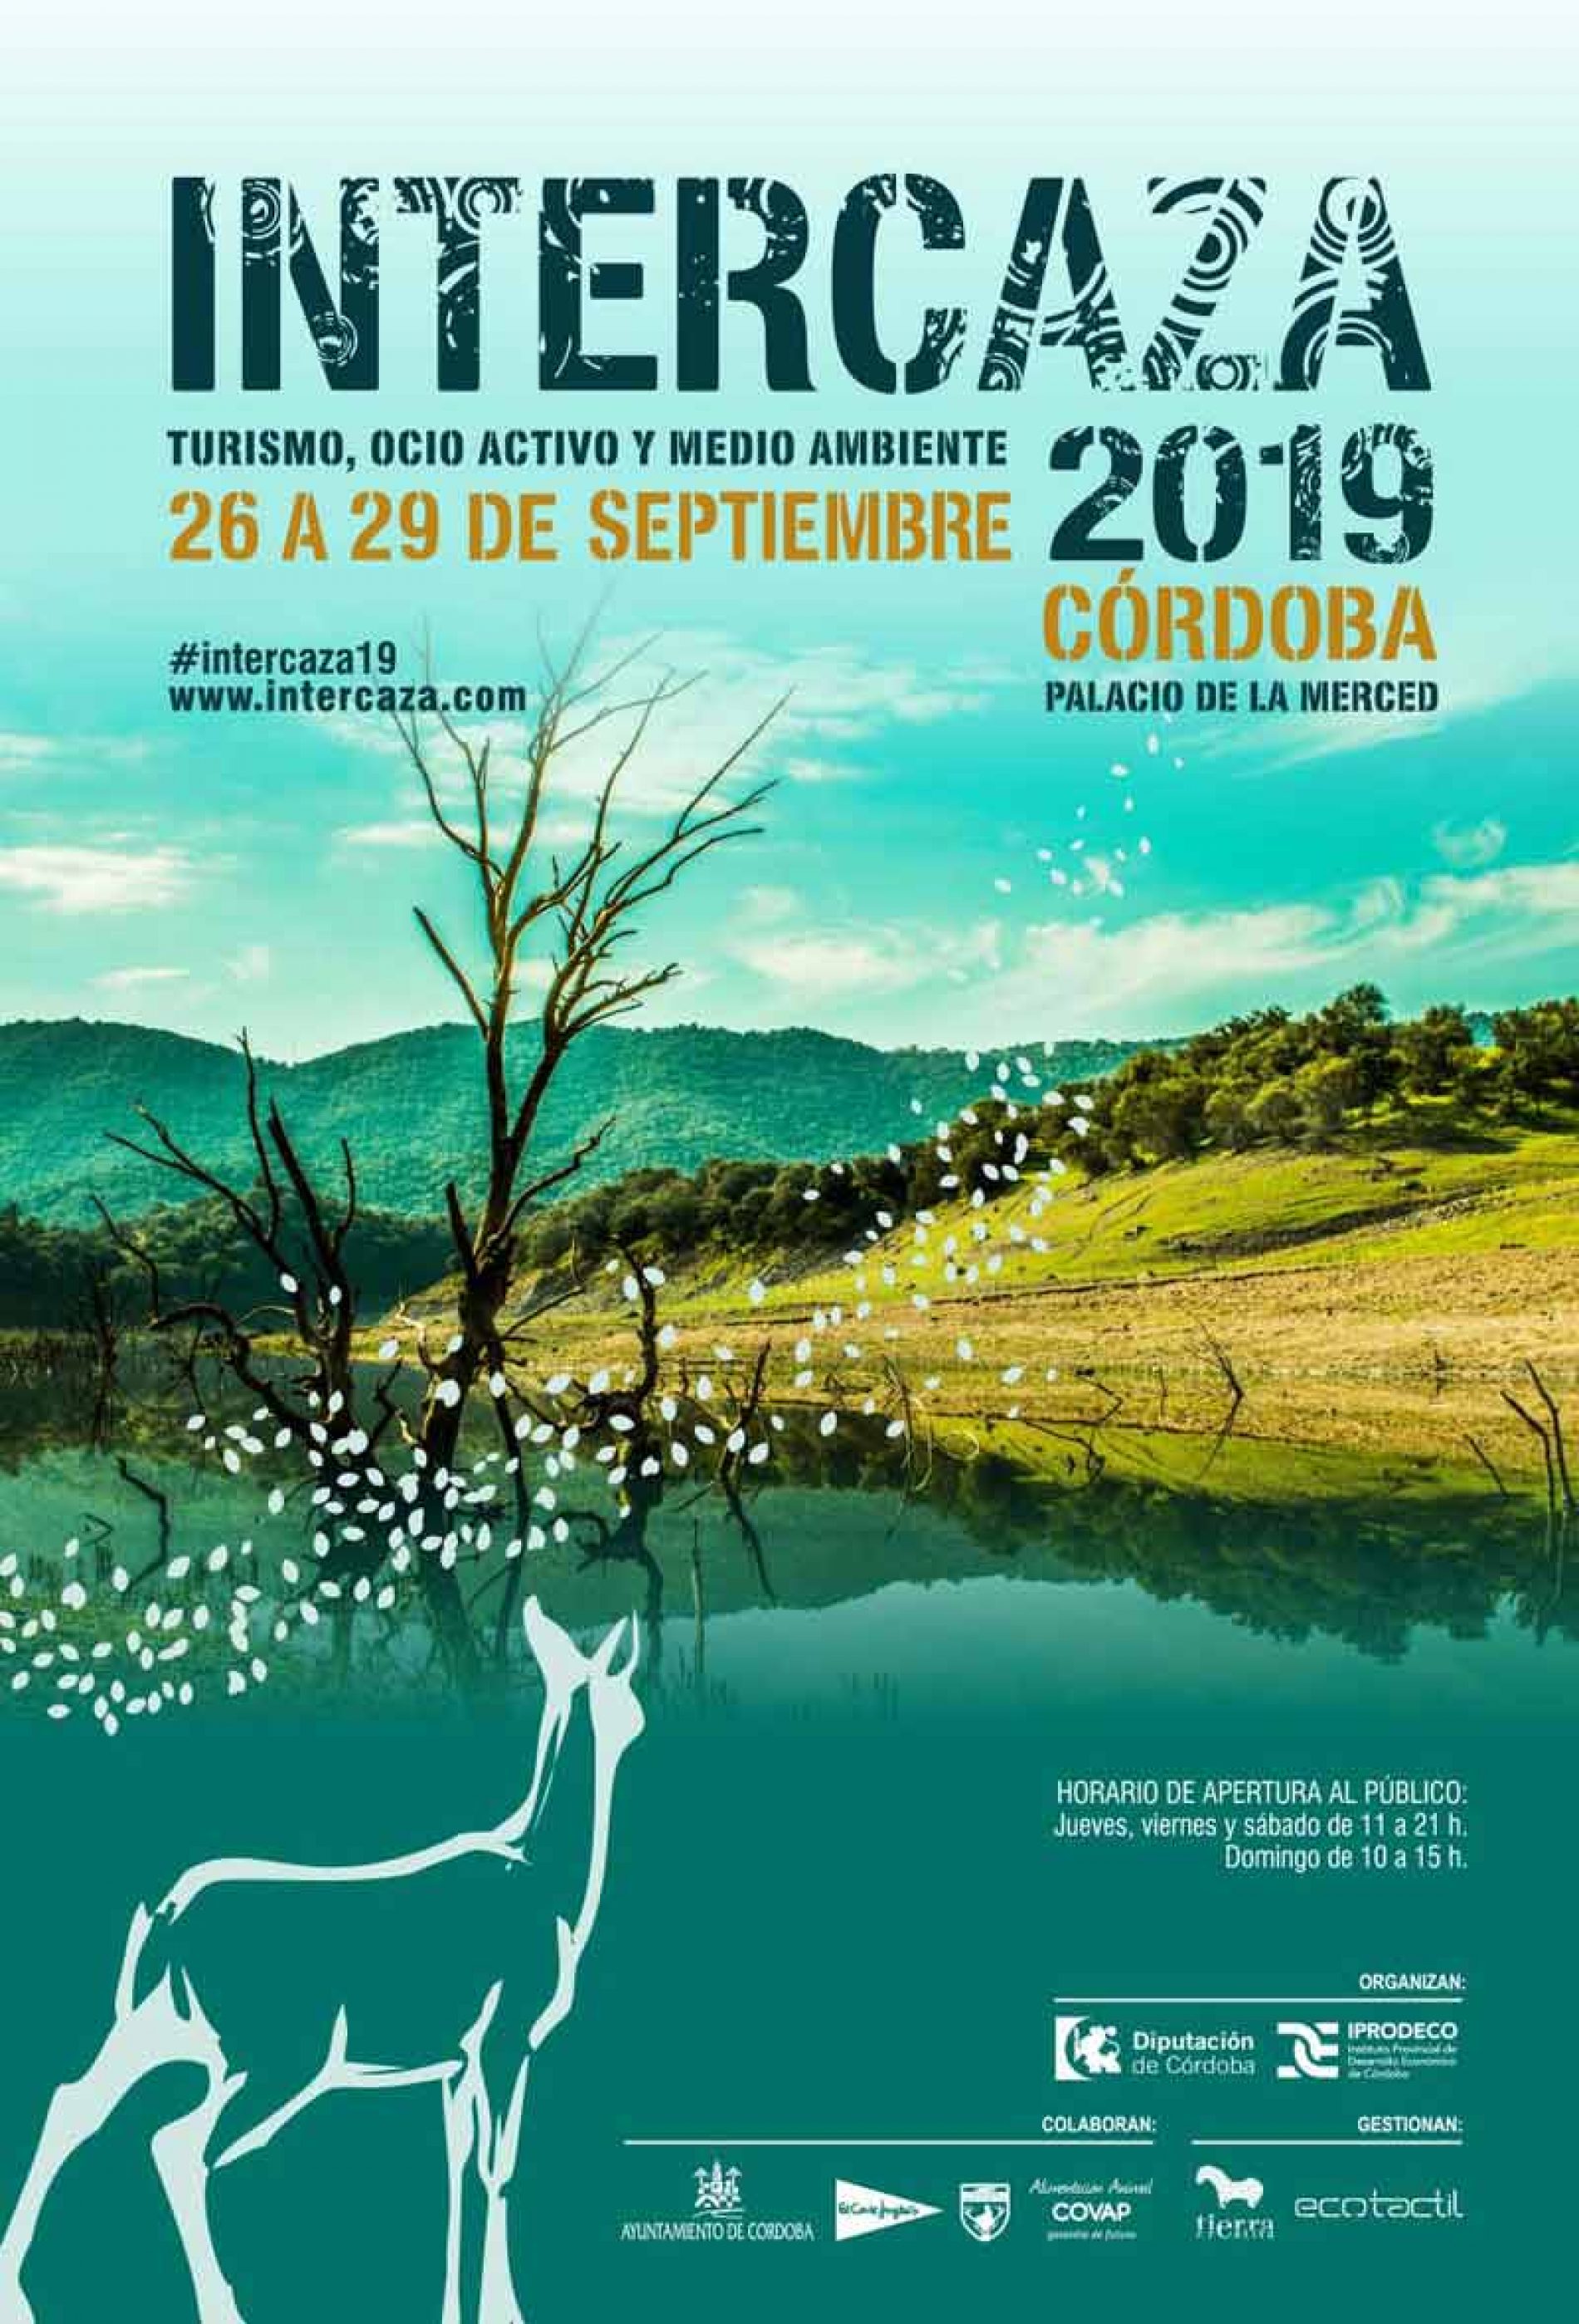 La XXIII edición de Intercaza, Feria de Turismo, Ocio Activo y Medio Ambiente, se celebrará del 26 al 29 de septiembre